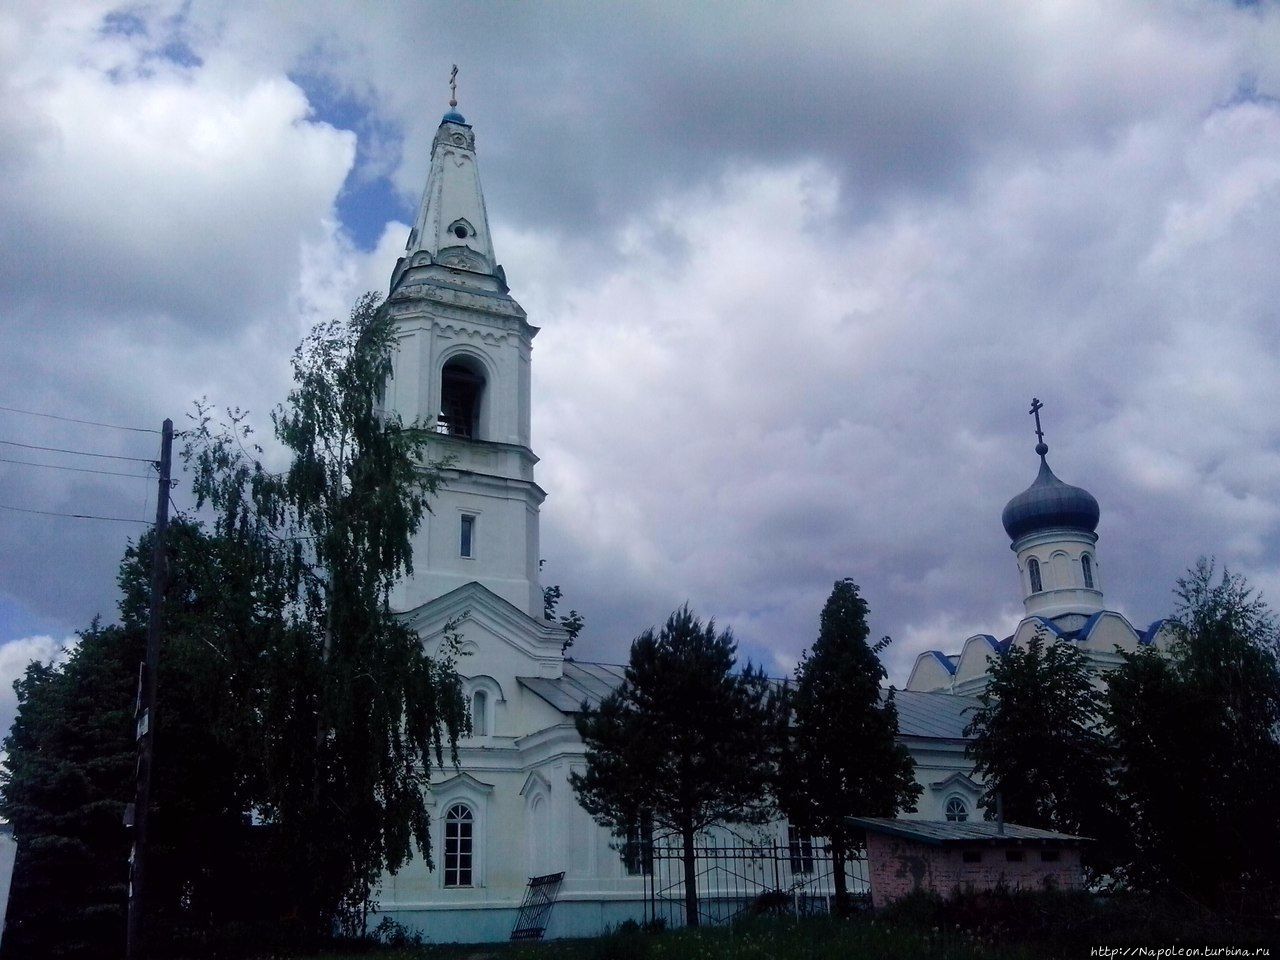 Церковь Казанской иконы Божией Матери / Church of the Kazan icon